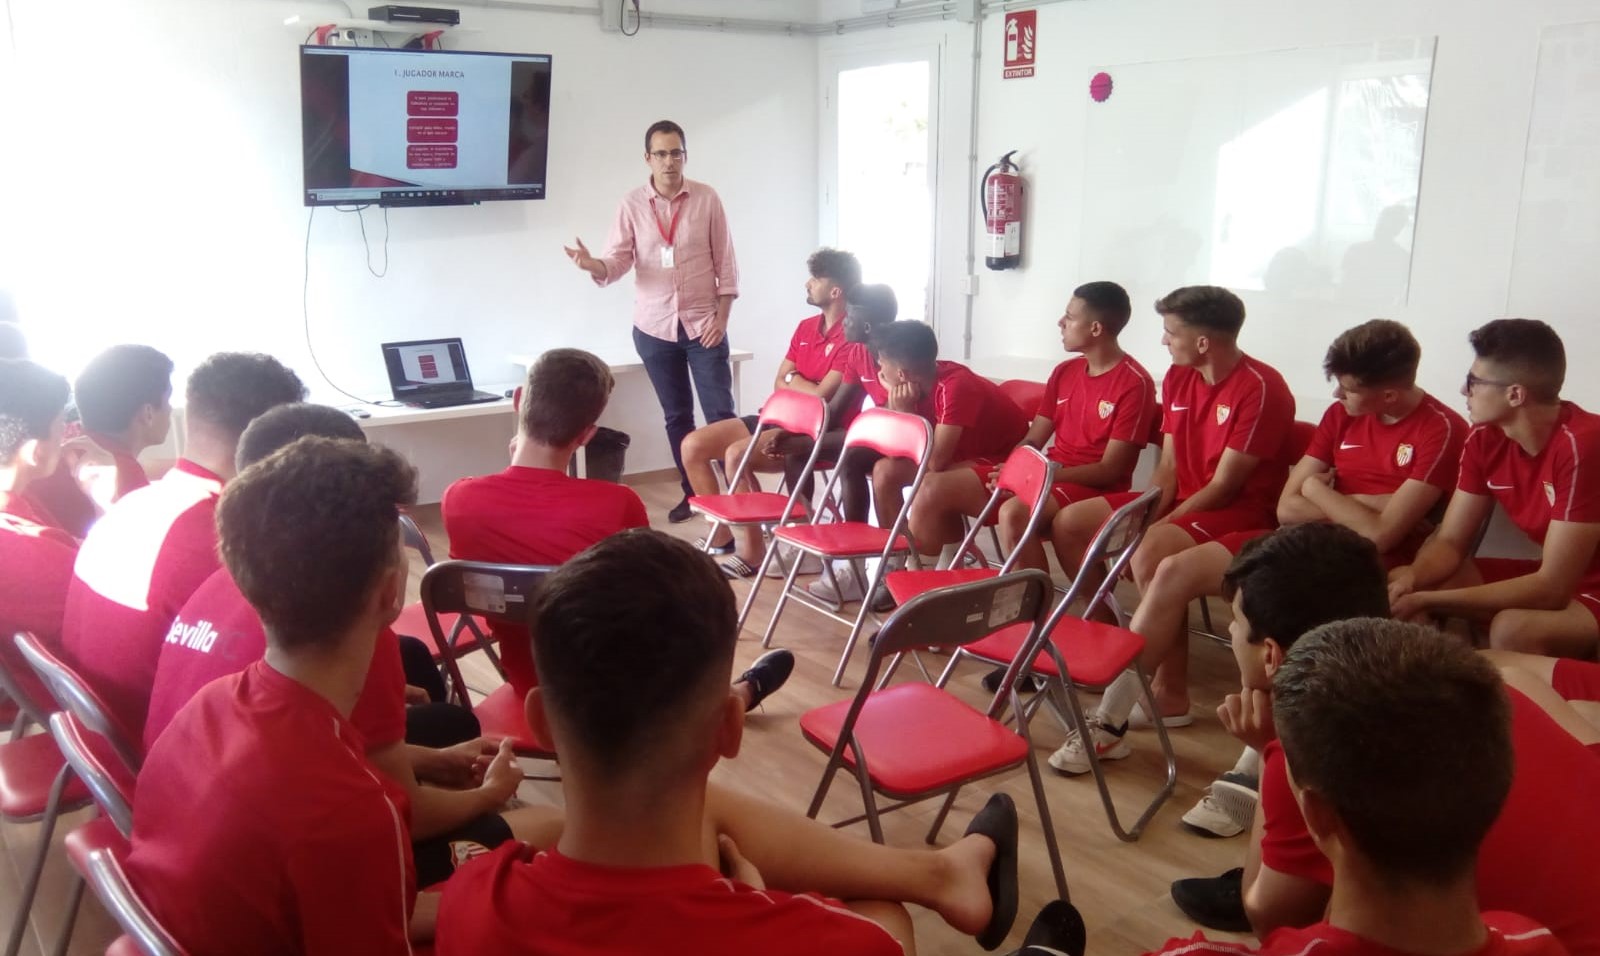 Charla sobre redes sociales en la residencia del Sevilla FC